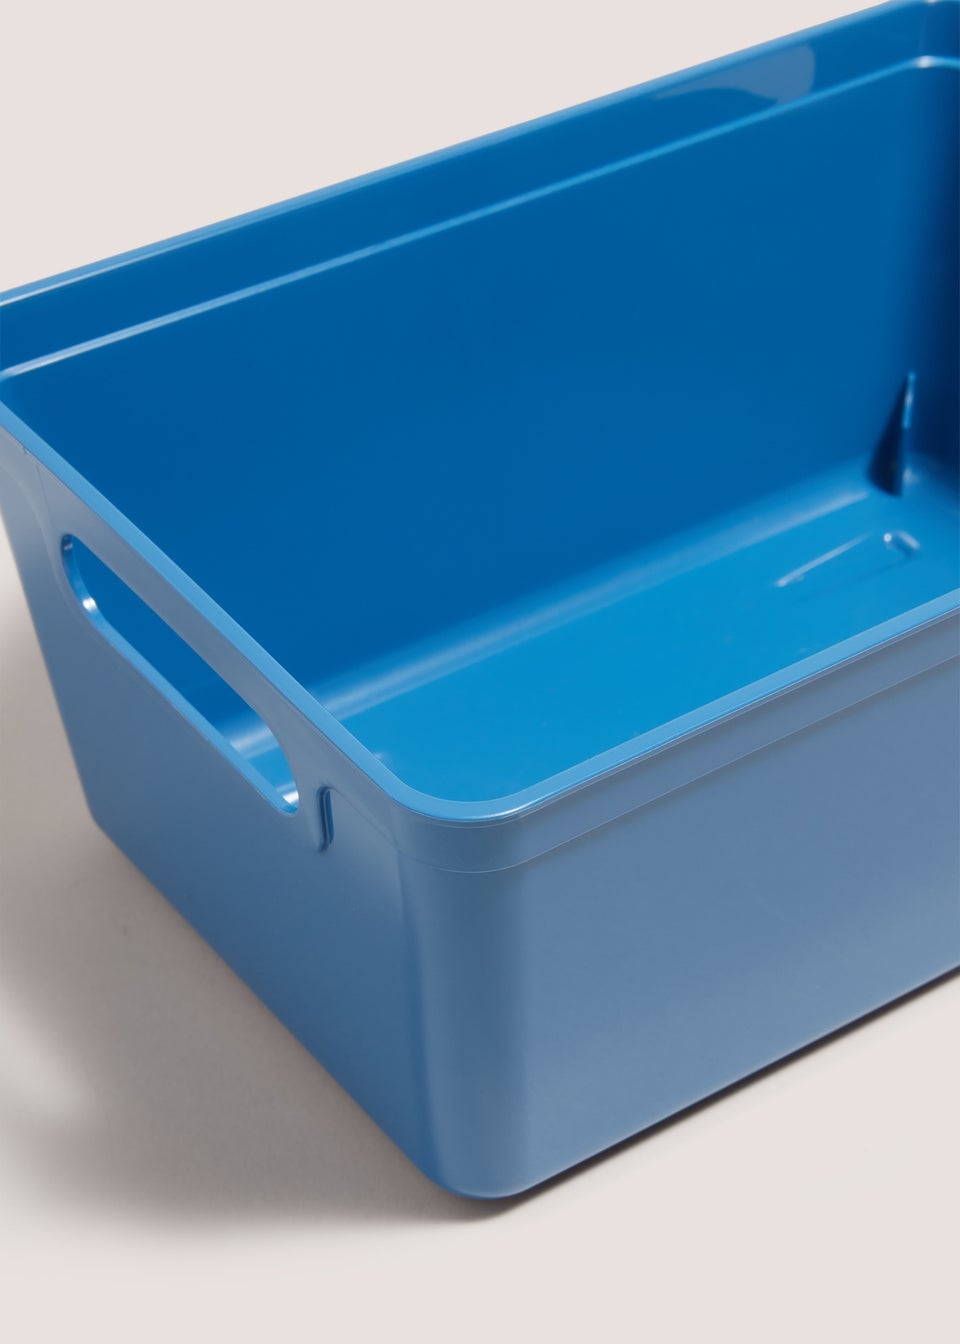 Blue Small Storage Tray (25cm x16.5cm x11.5cm)